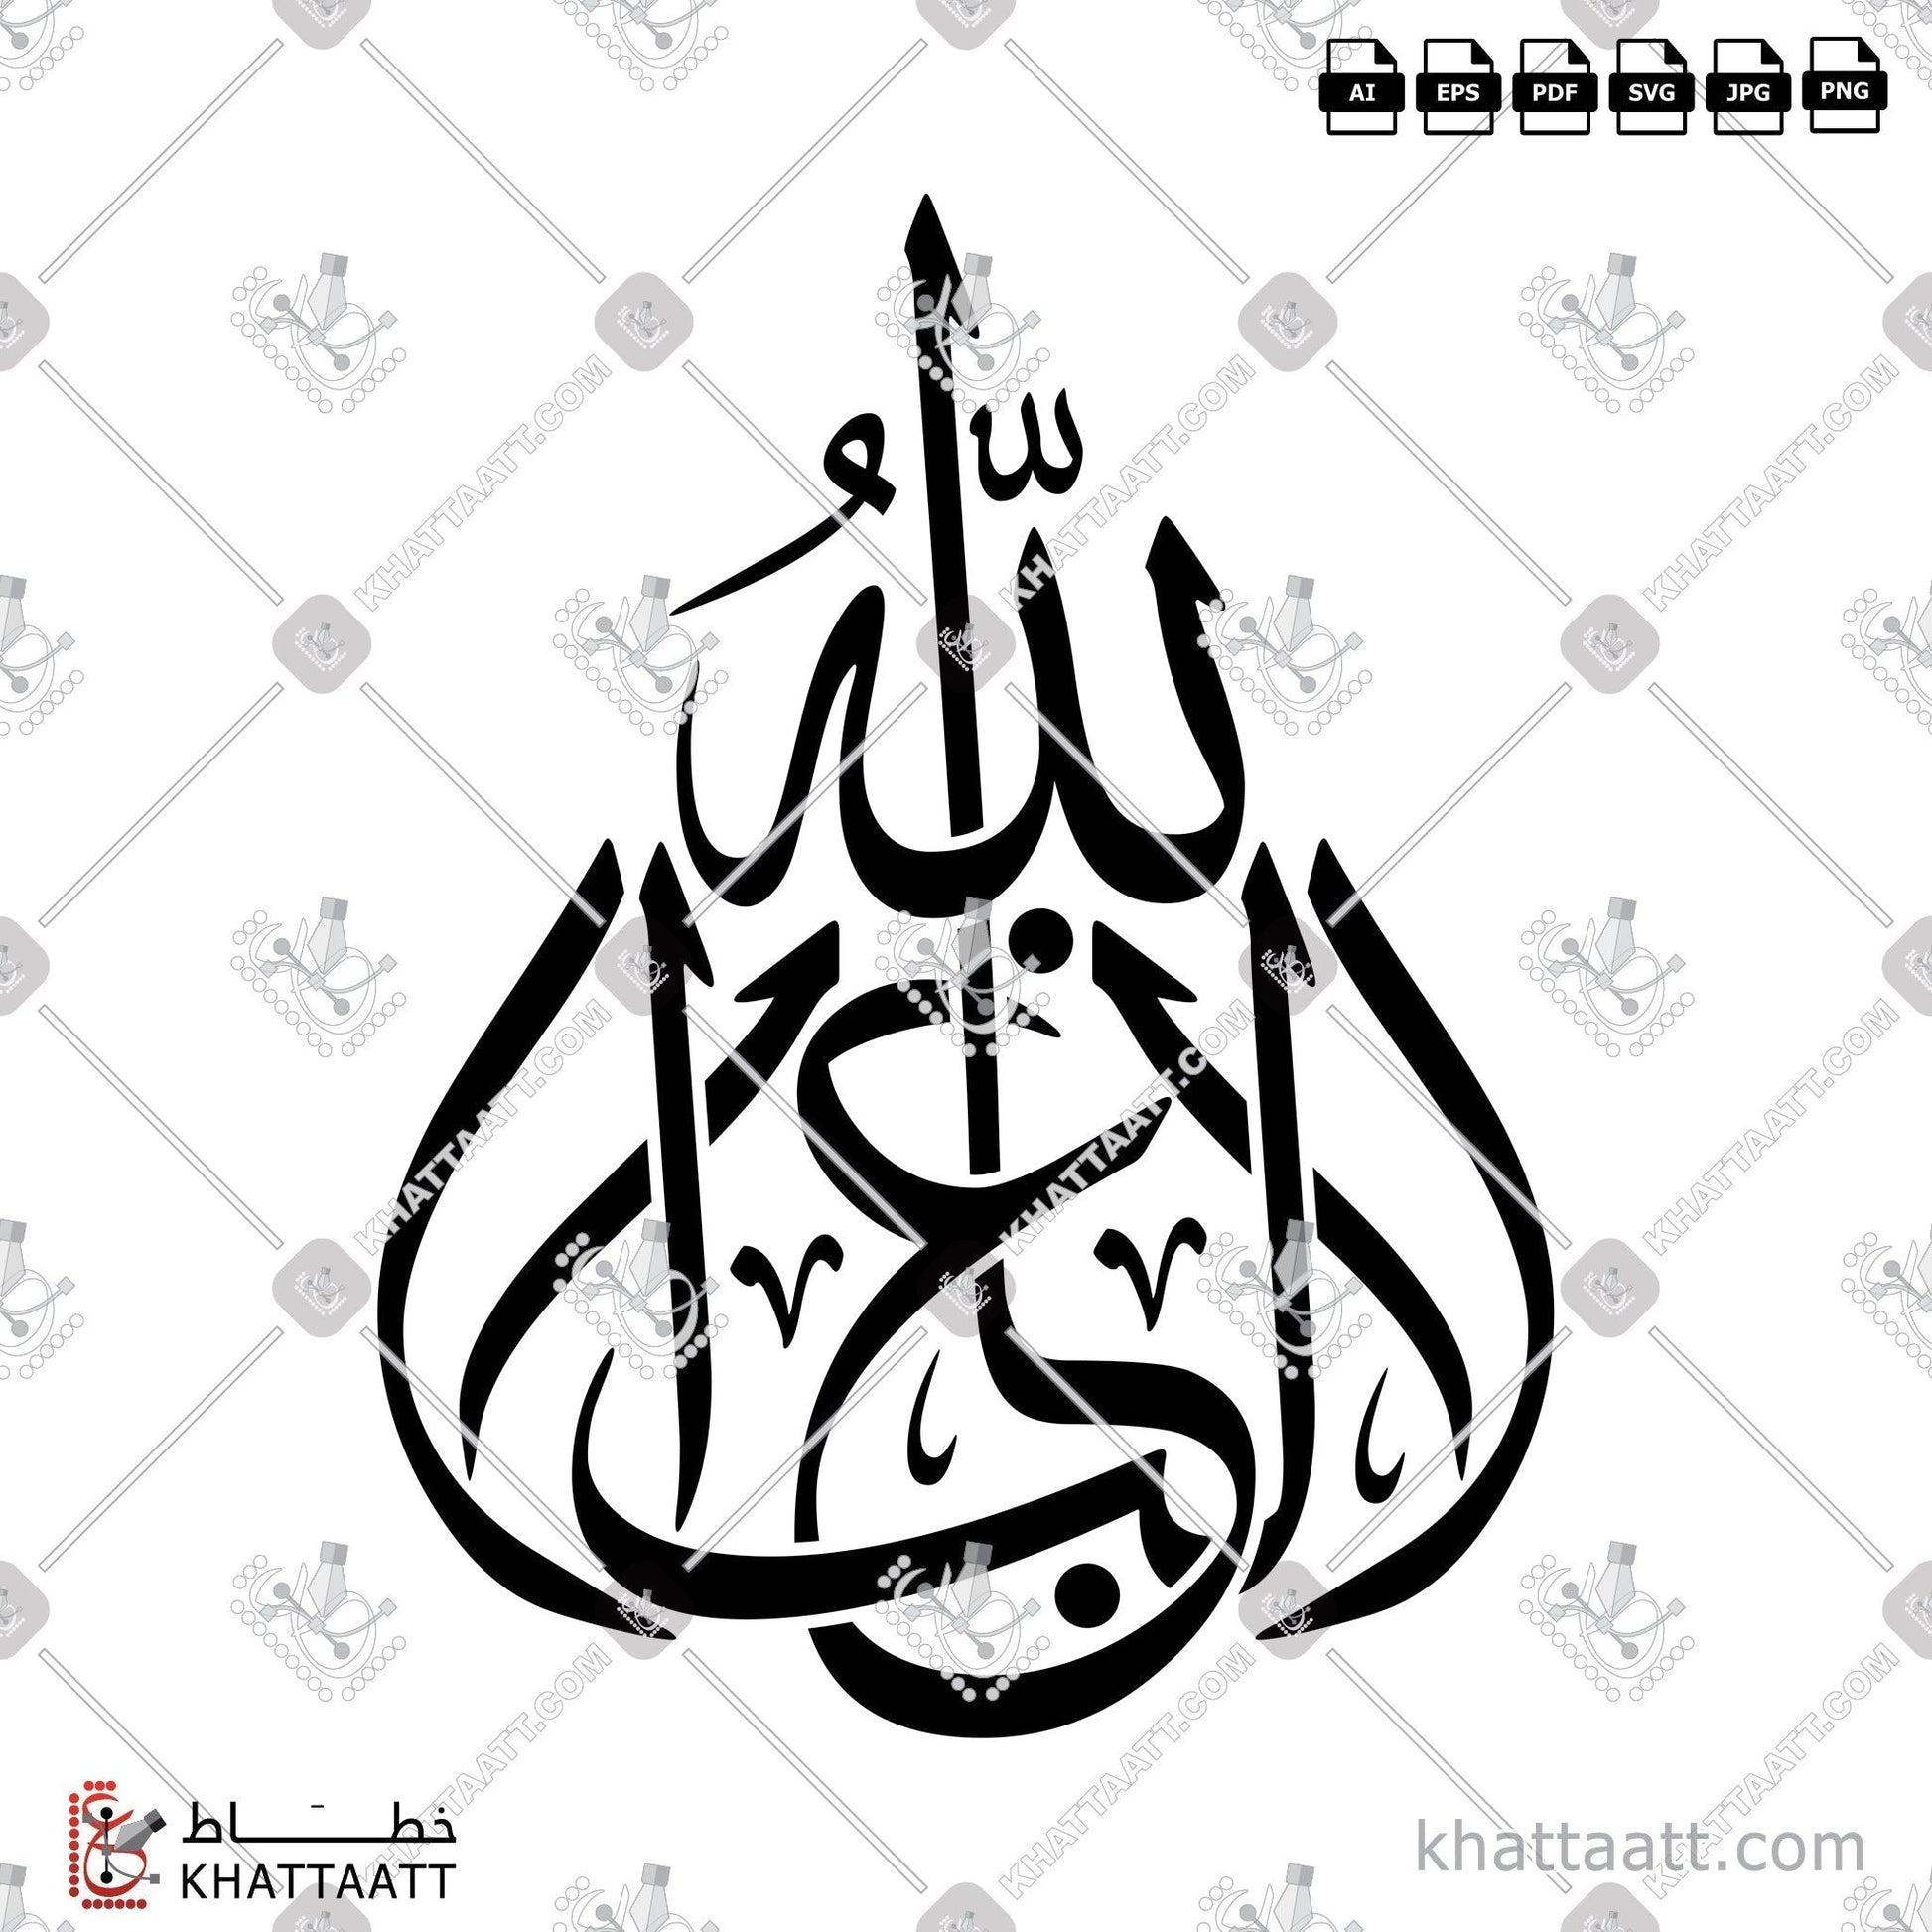 Allah, Arabic Calligraphy Vector, Symmetrical Design, Thuluth Script, الخط العربي, الله, الله جل جلاله, الله عز وجل, خط الثلث, لا غالب إلا الله KHATTAATT